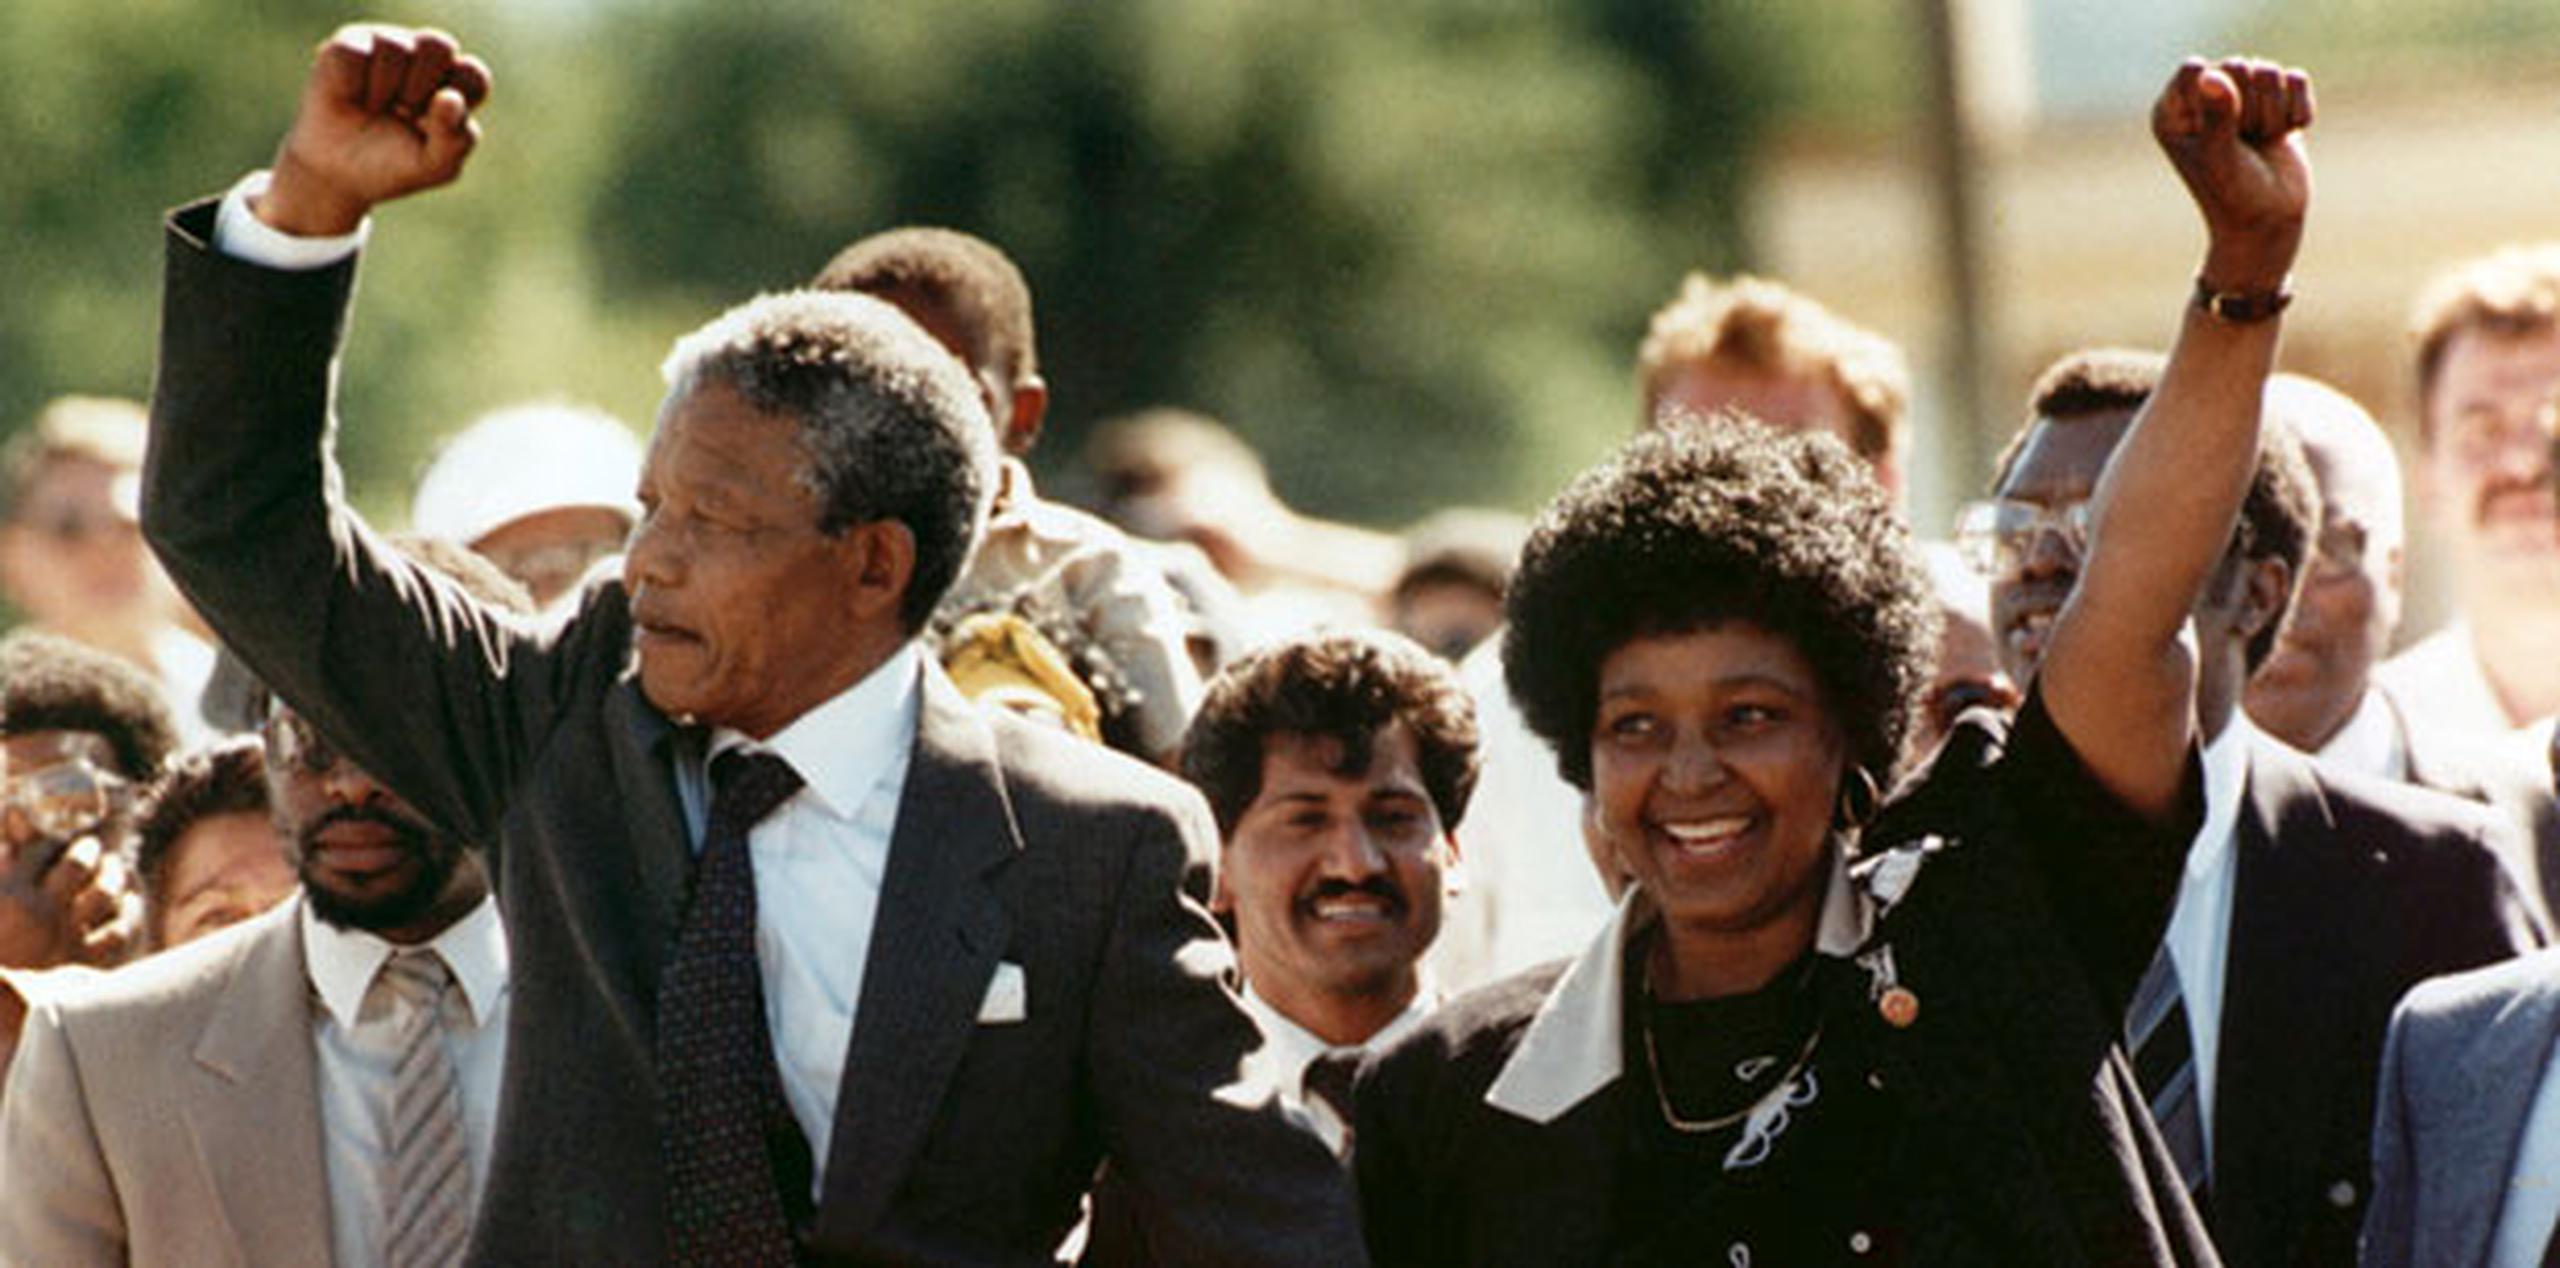 En la foto, Nelson Mandela con su entonces esposa Winnie Madikizela-Mandela durante una caminata en 1990 poco después de que fuera liberado de prisión. (Archivo/AP)